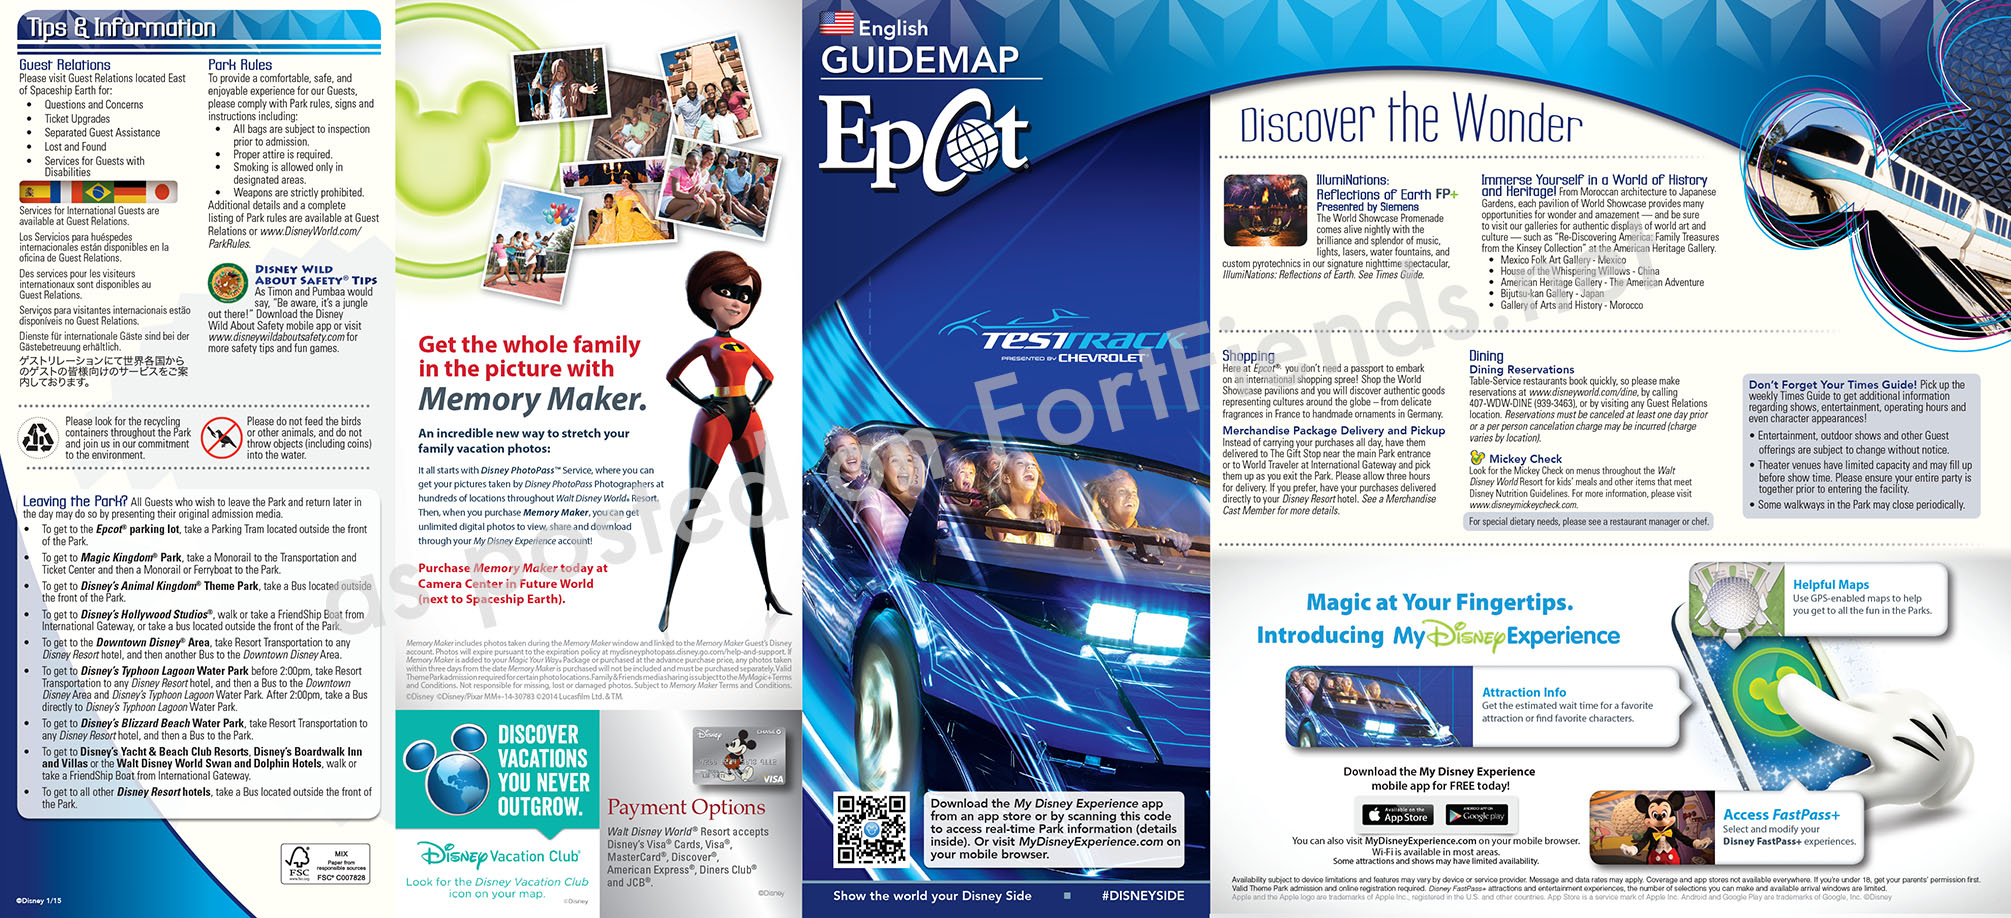 GuideMap-2015-01-EP1.jpg